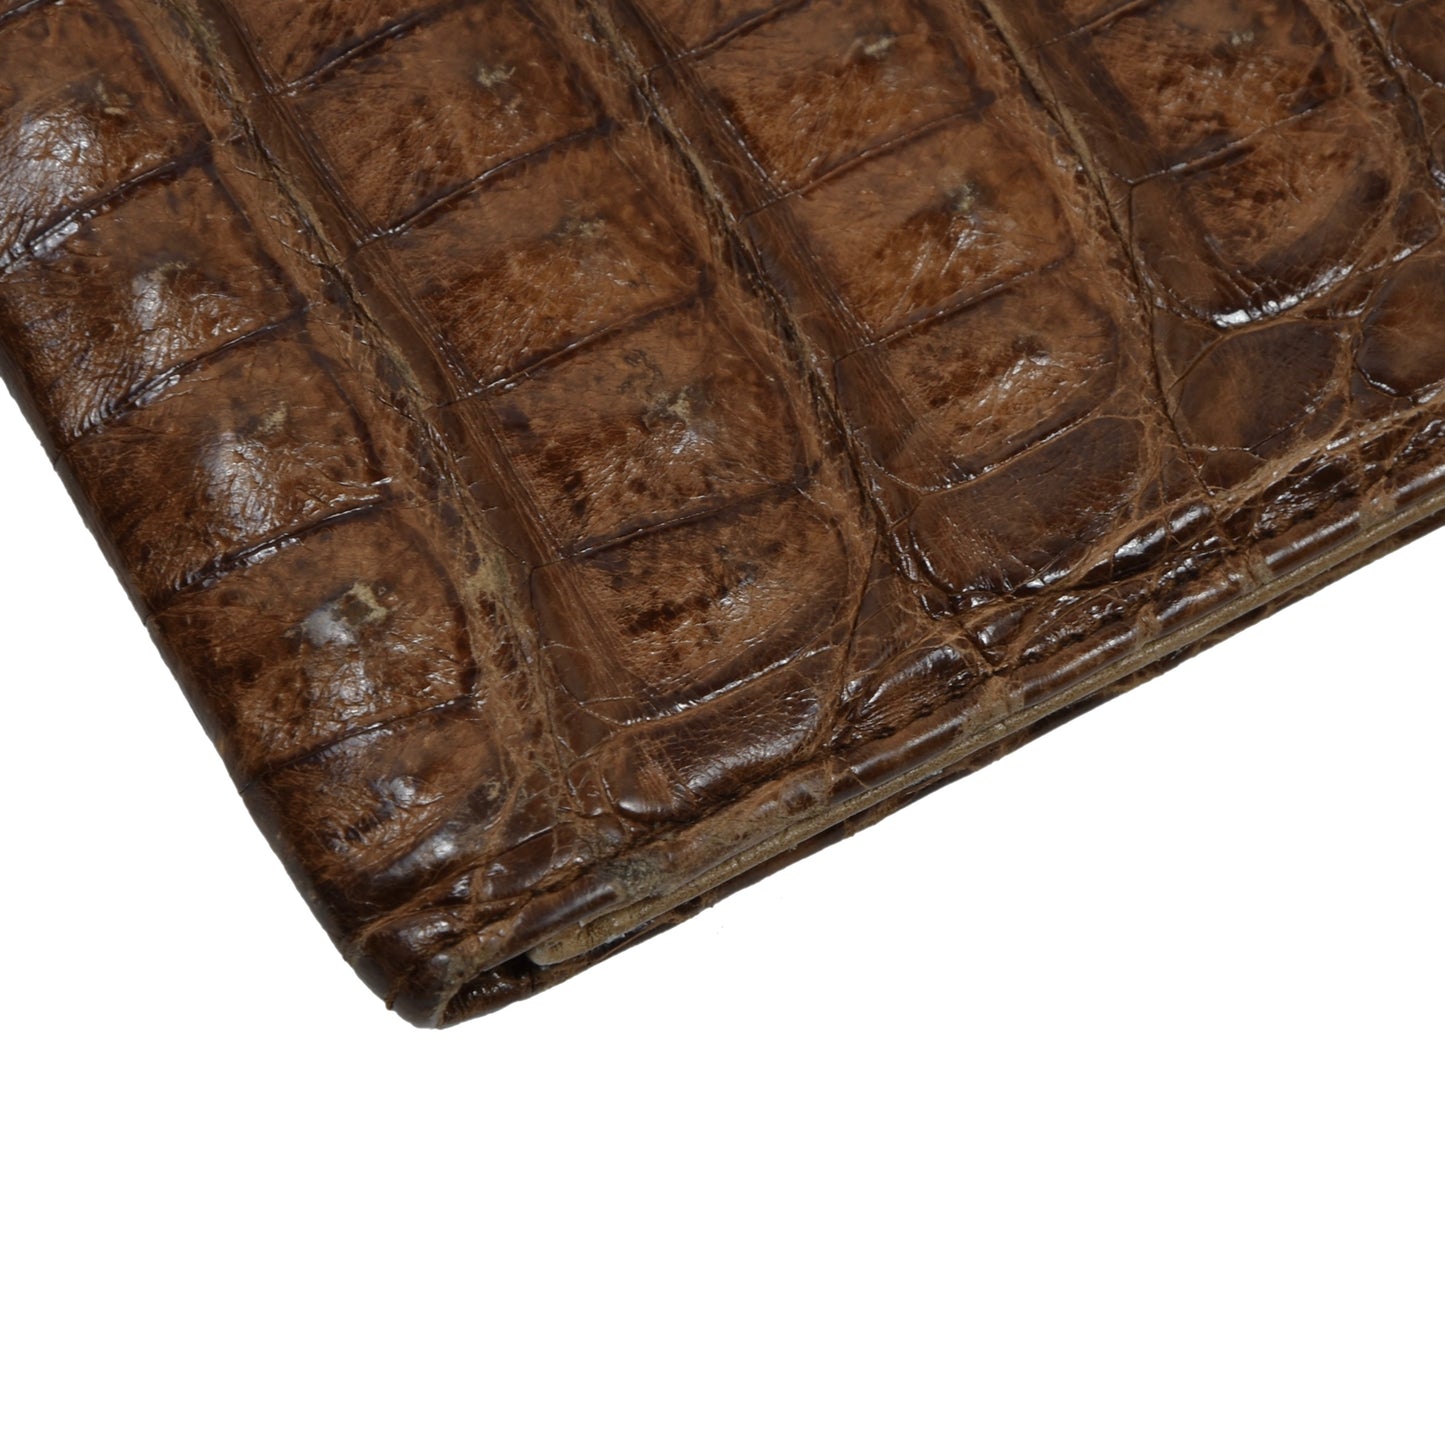 Goldpfeil Reisegeldtasche aus Krokodilleder - Braun